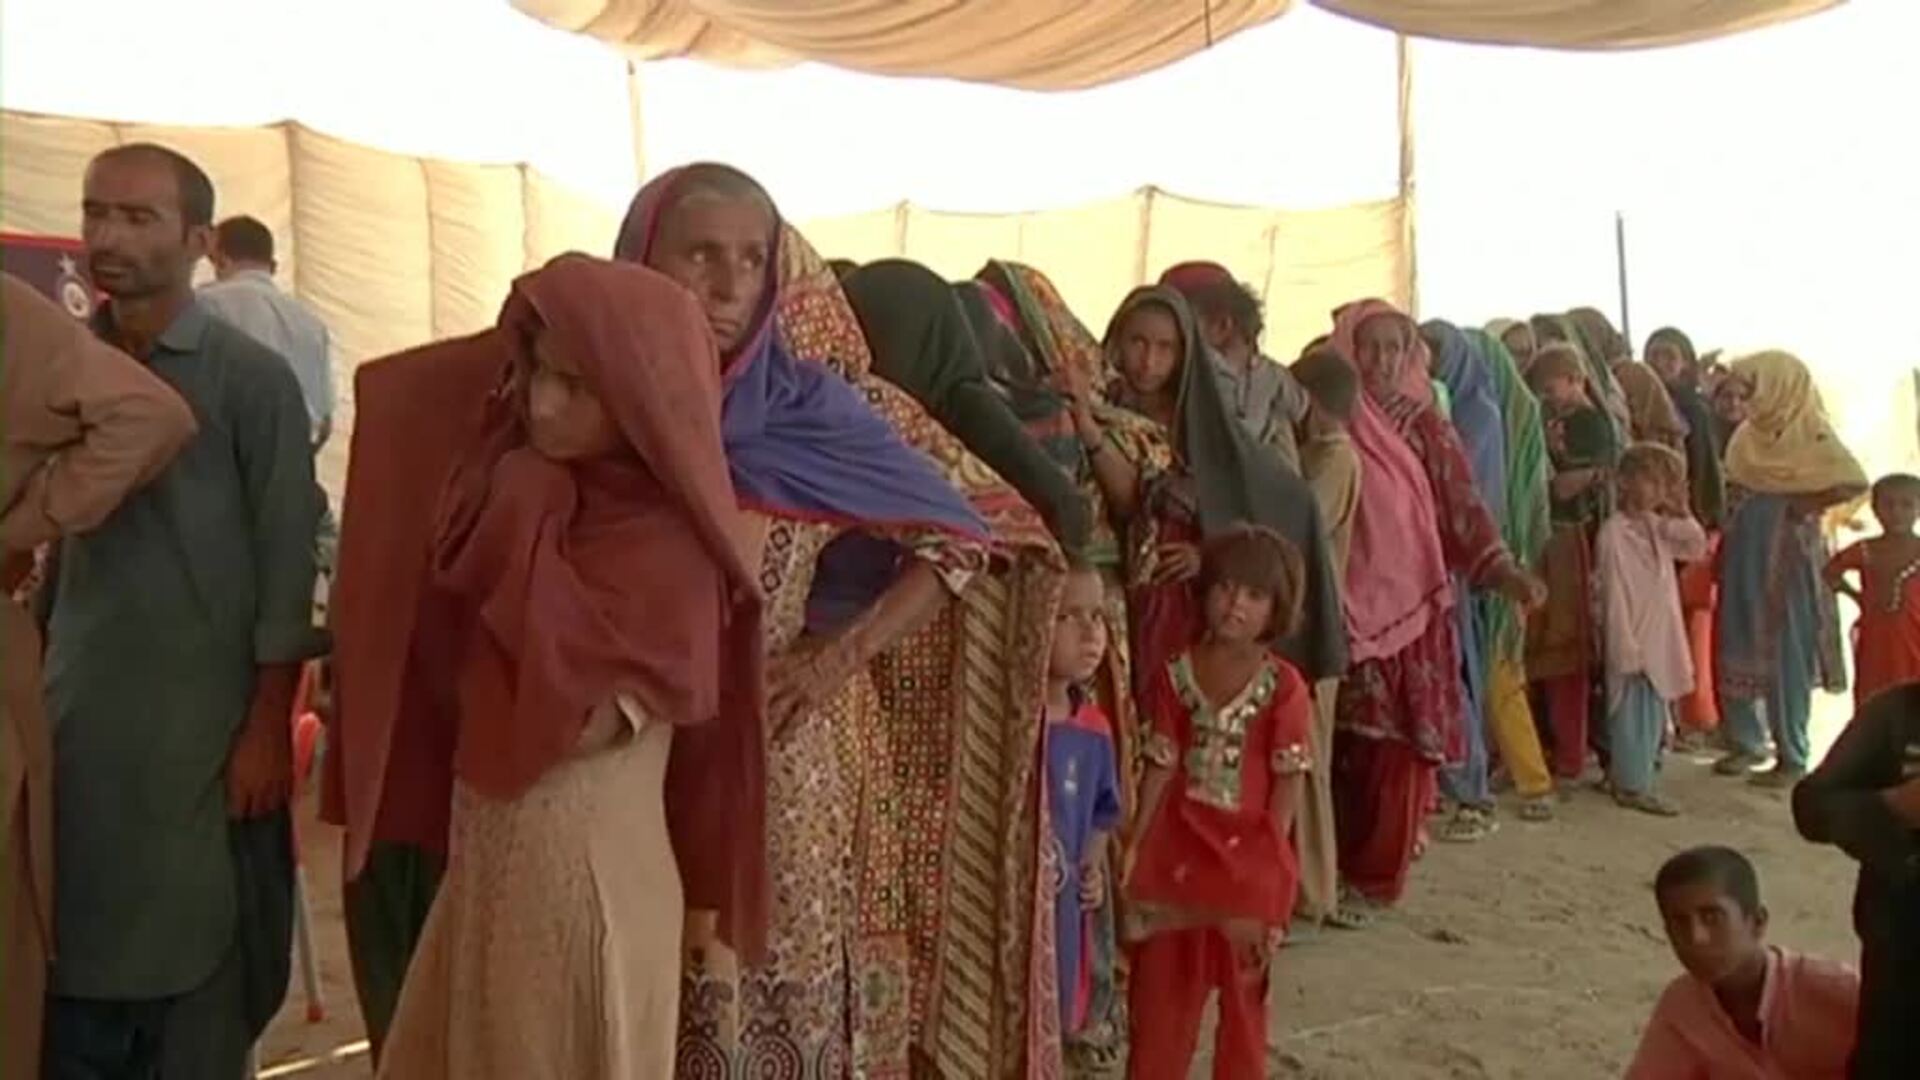 Las enfermedades asolan a la población más vulnerable tras las peores inundaciones sufridas en Pakistán en décadas